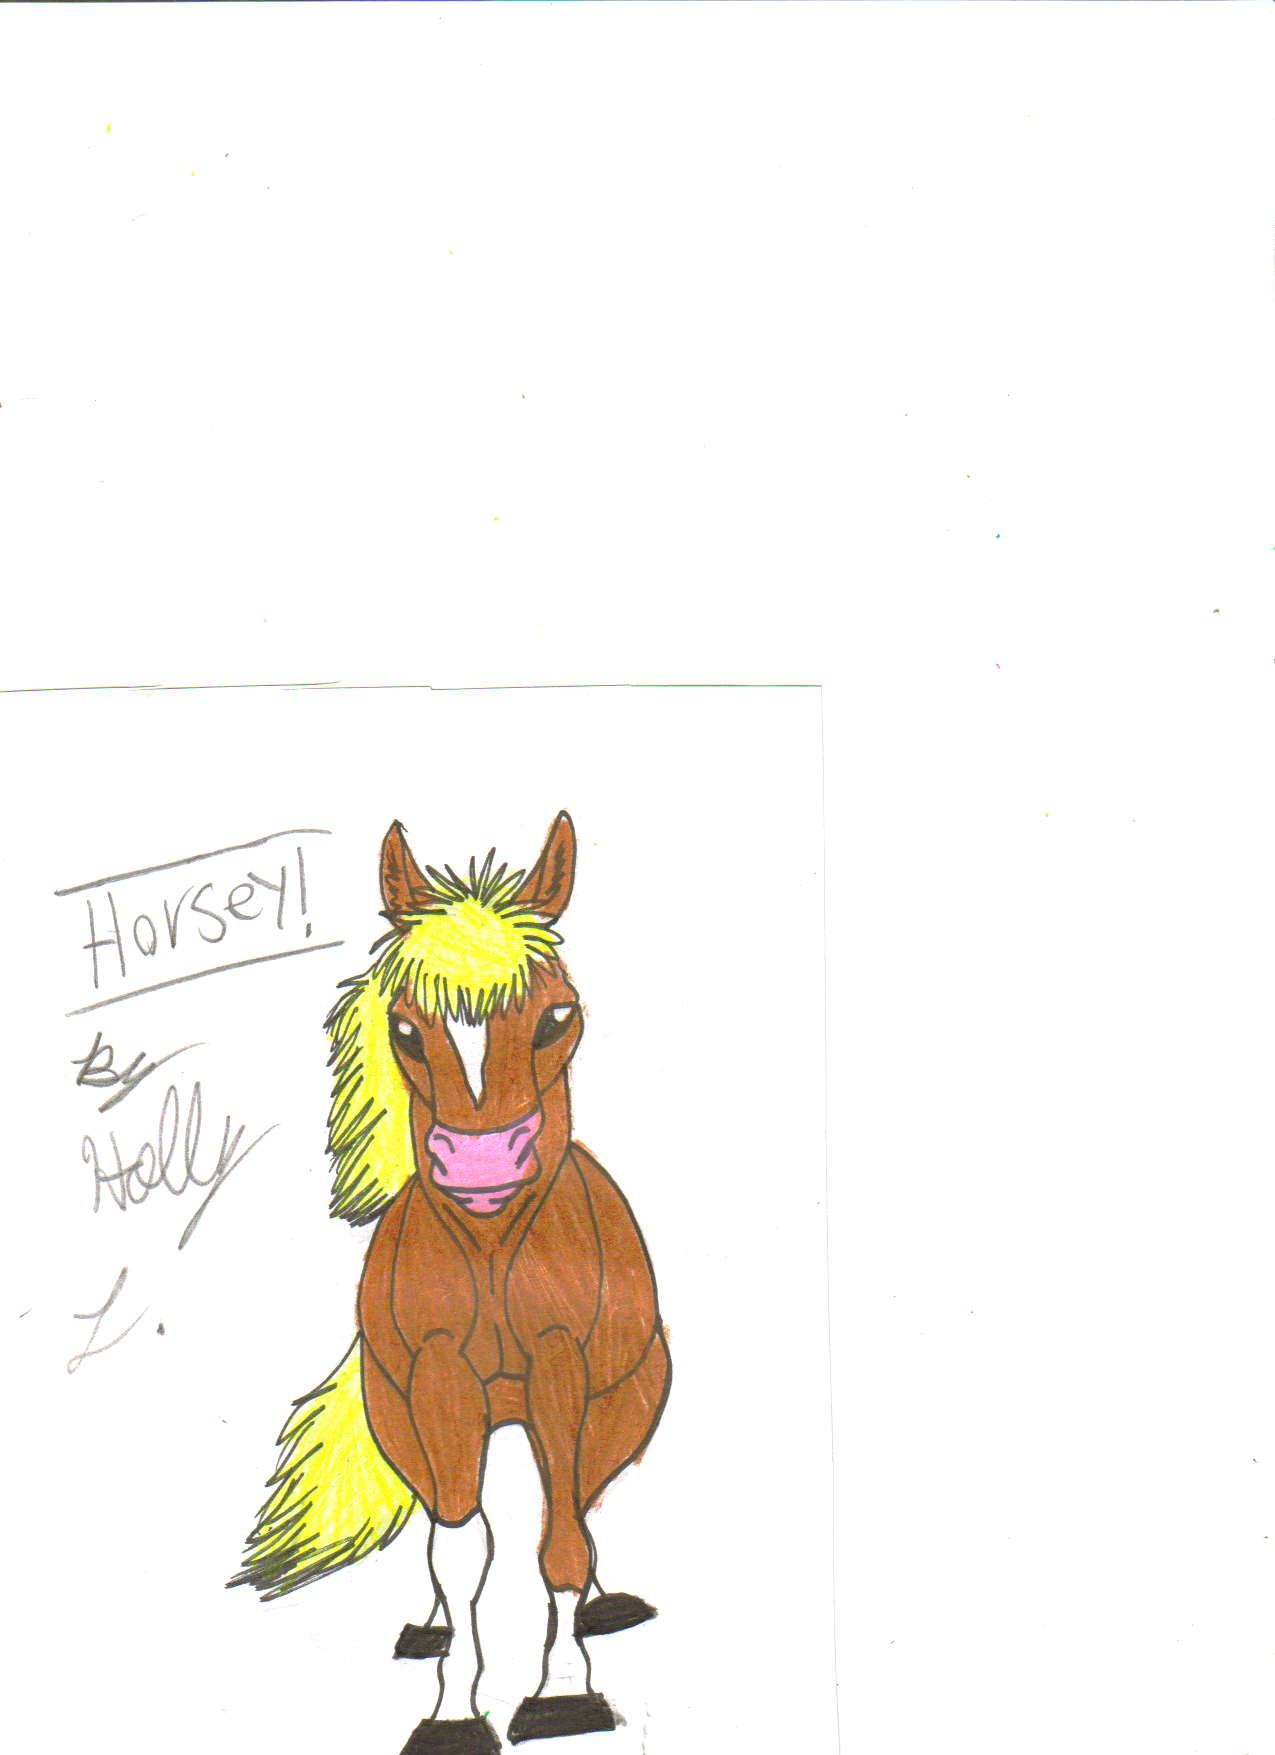 Horsey! by hawaiifan